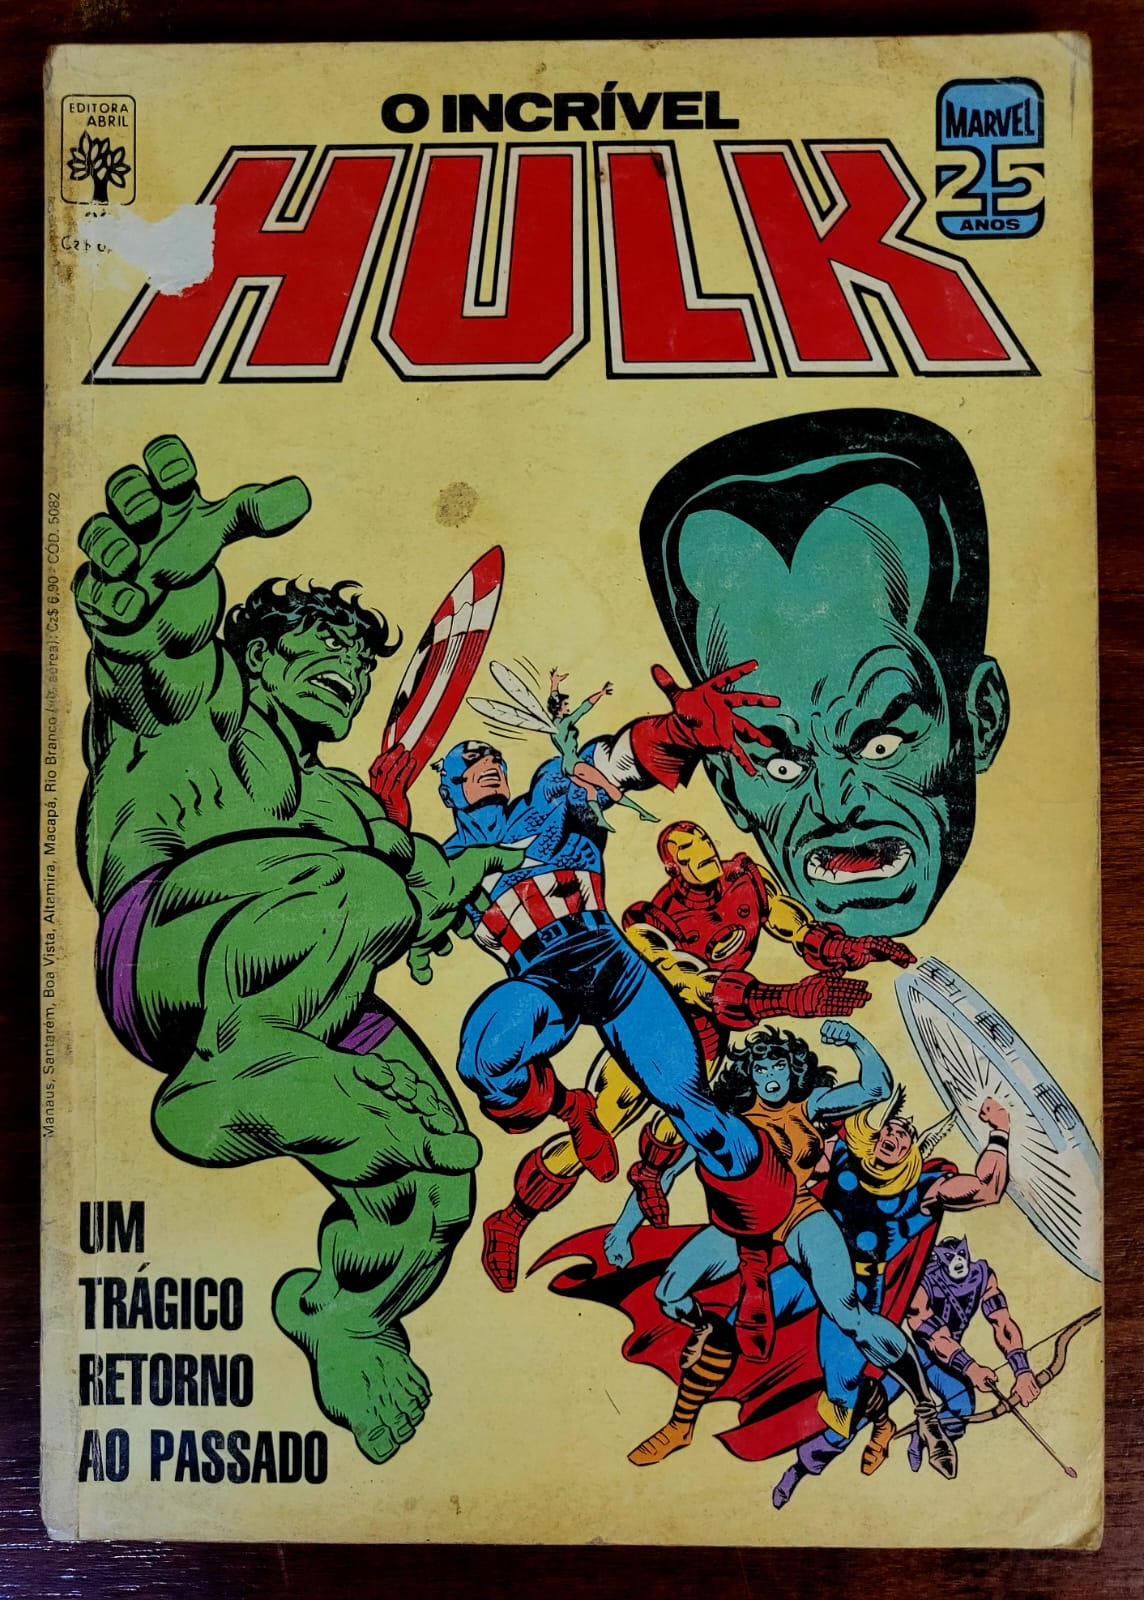 O Incrivel Hulk 36 a Casa do Colecionador